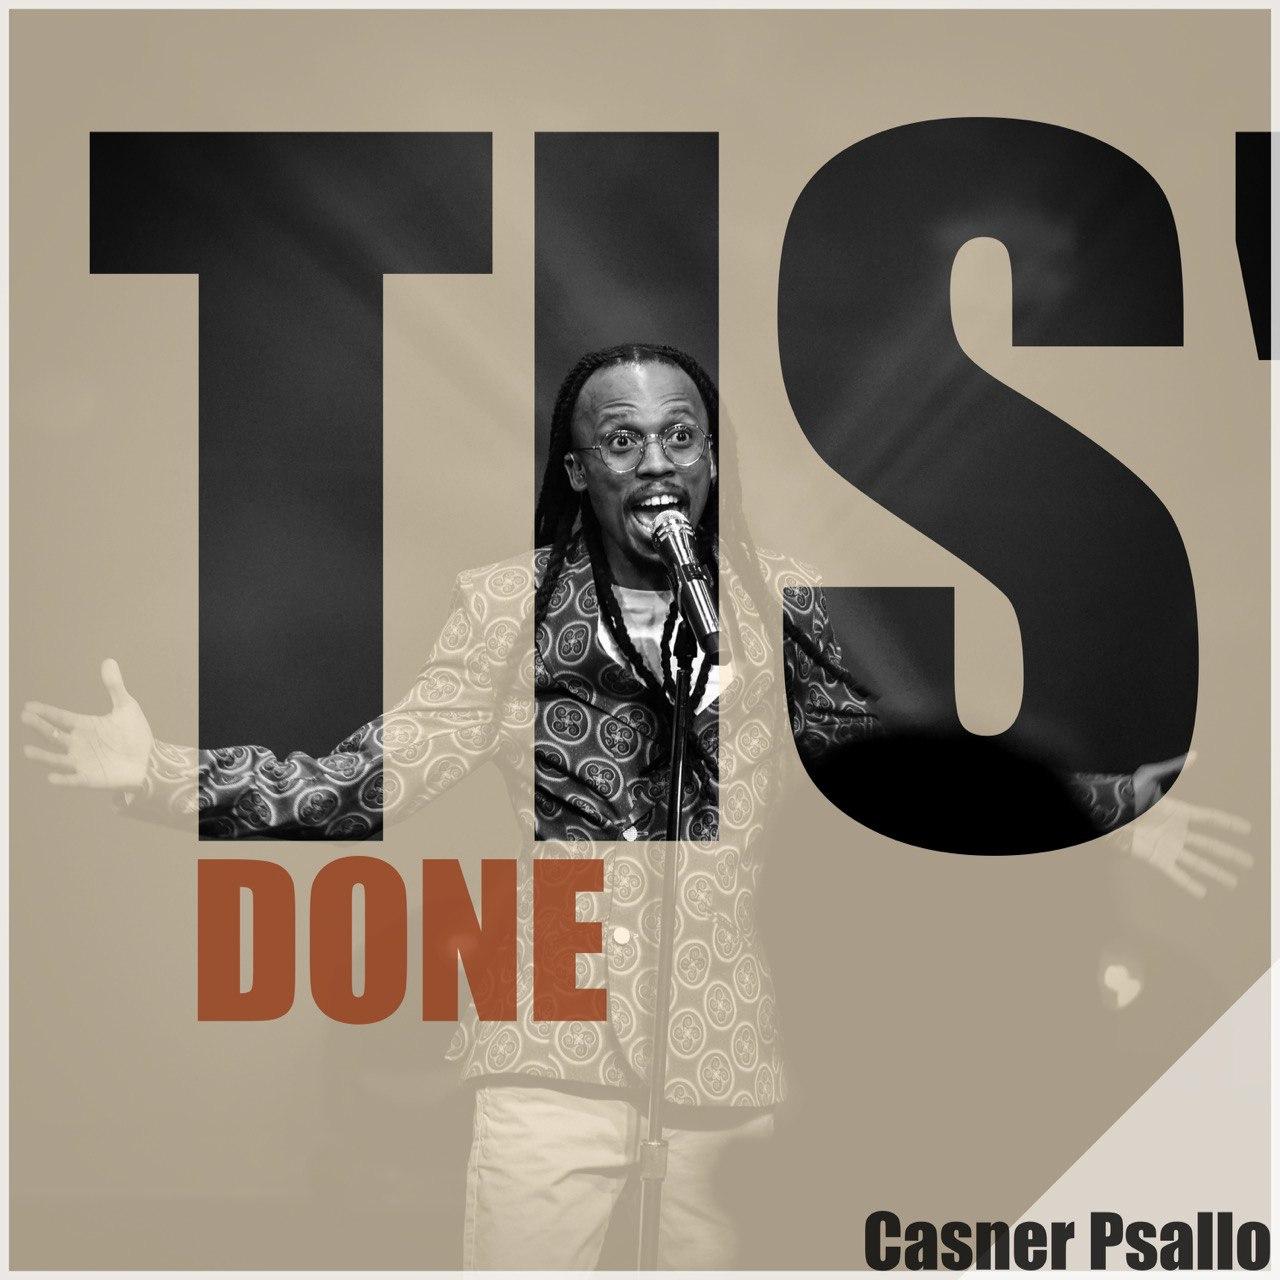 Music: “TIS’ DONE” - Casner Psallo